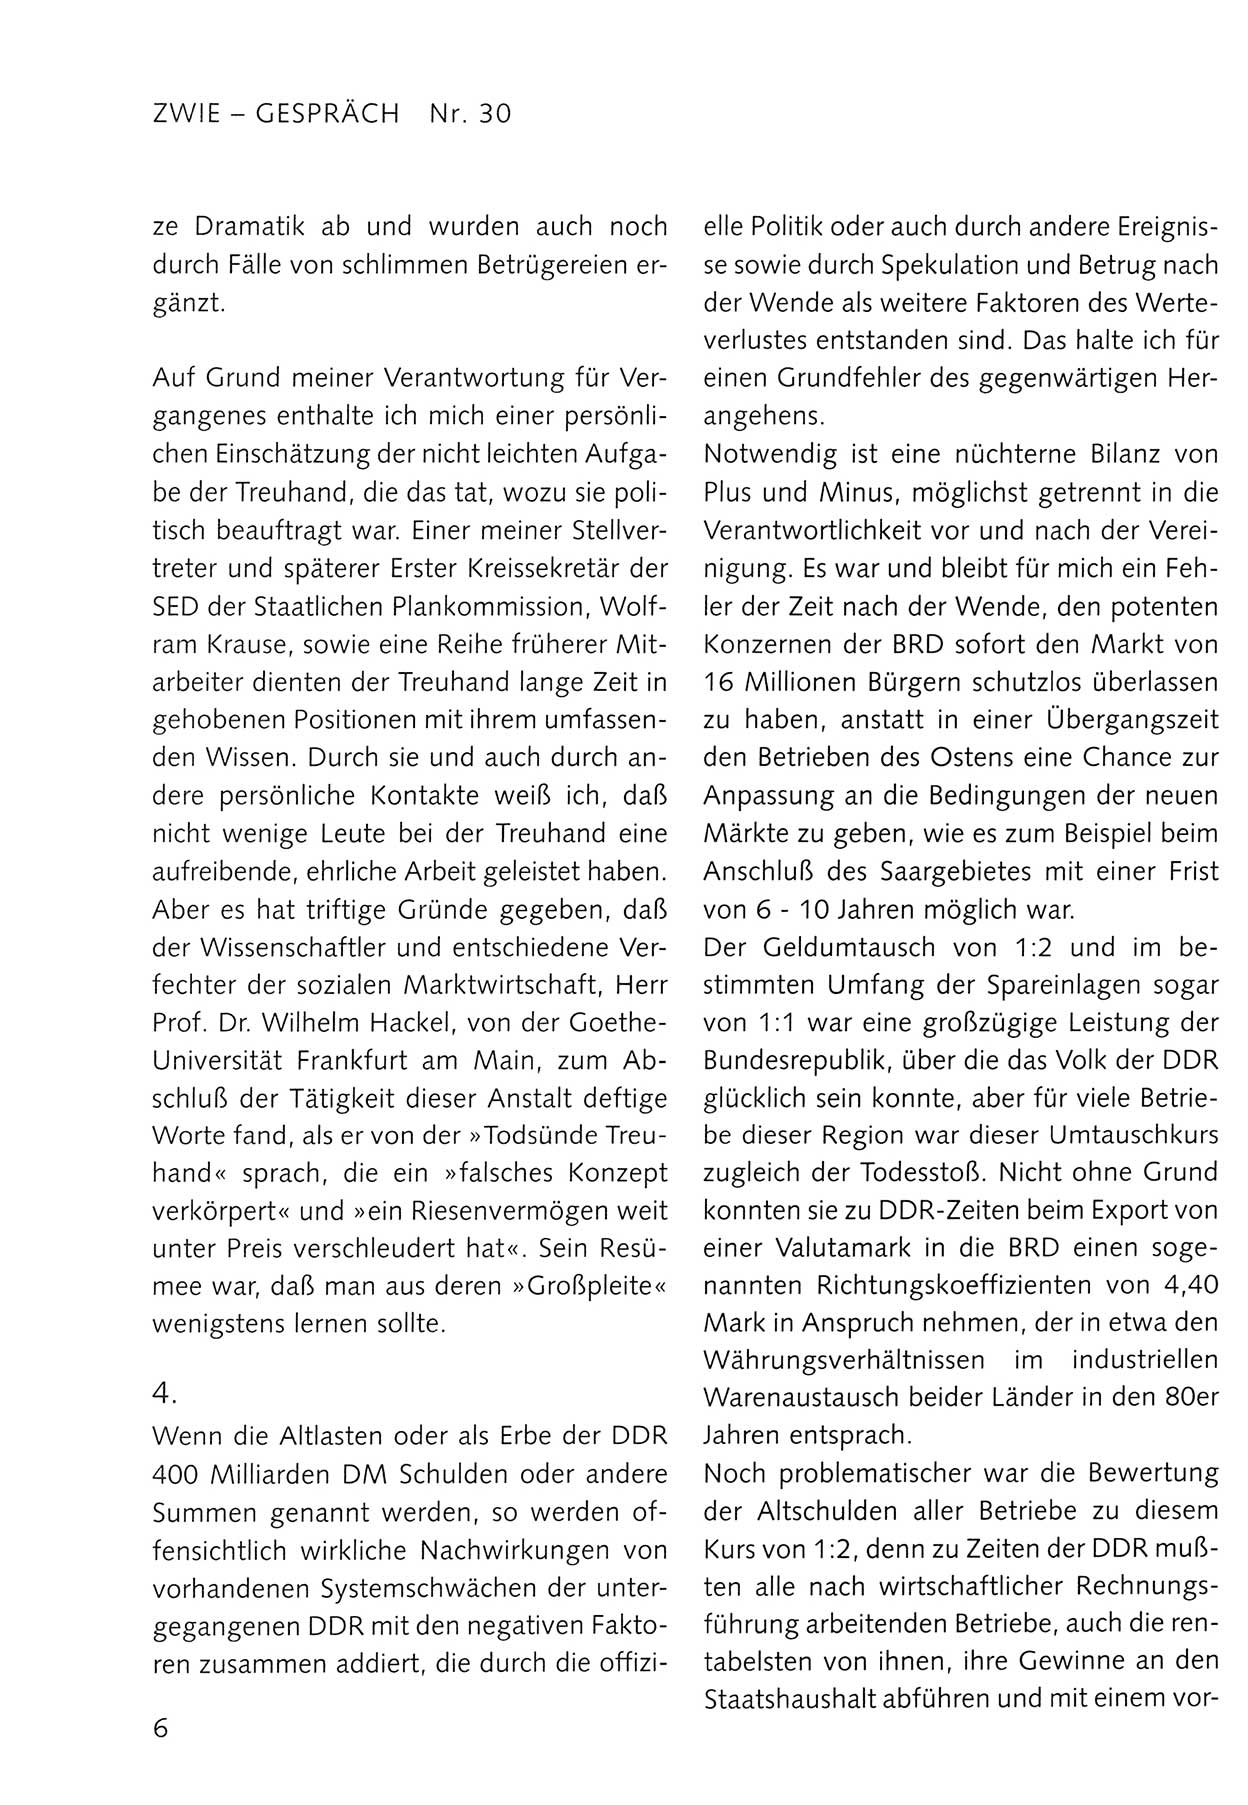 Zwie-Gespräch, Beiträge zum Umgang mit der Staatssicherheits-Vergangenheit [Deutsche Demokratische Republik (DDR)], Ausgabe Nr. 30, Berlin 1995, Seite 6 (Zwie-Gespr. Ausg. 30 1995, S. 6)